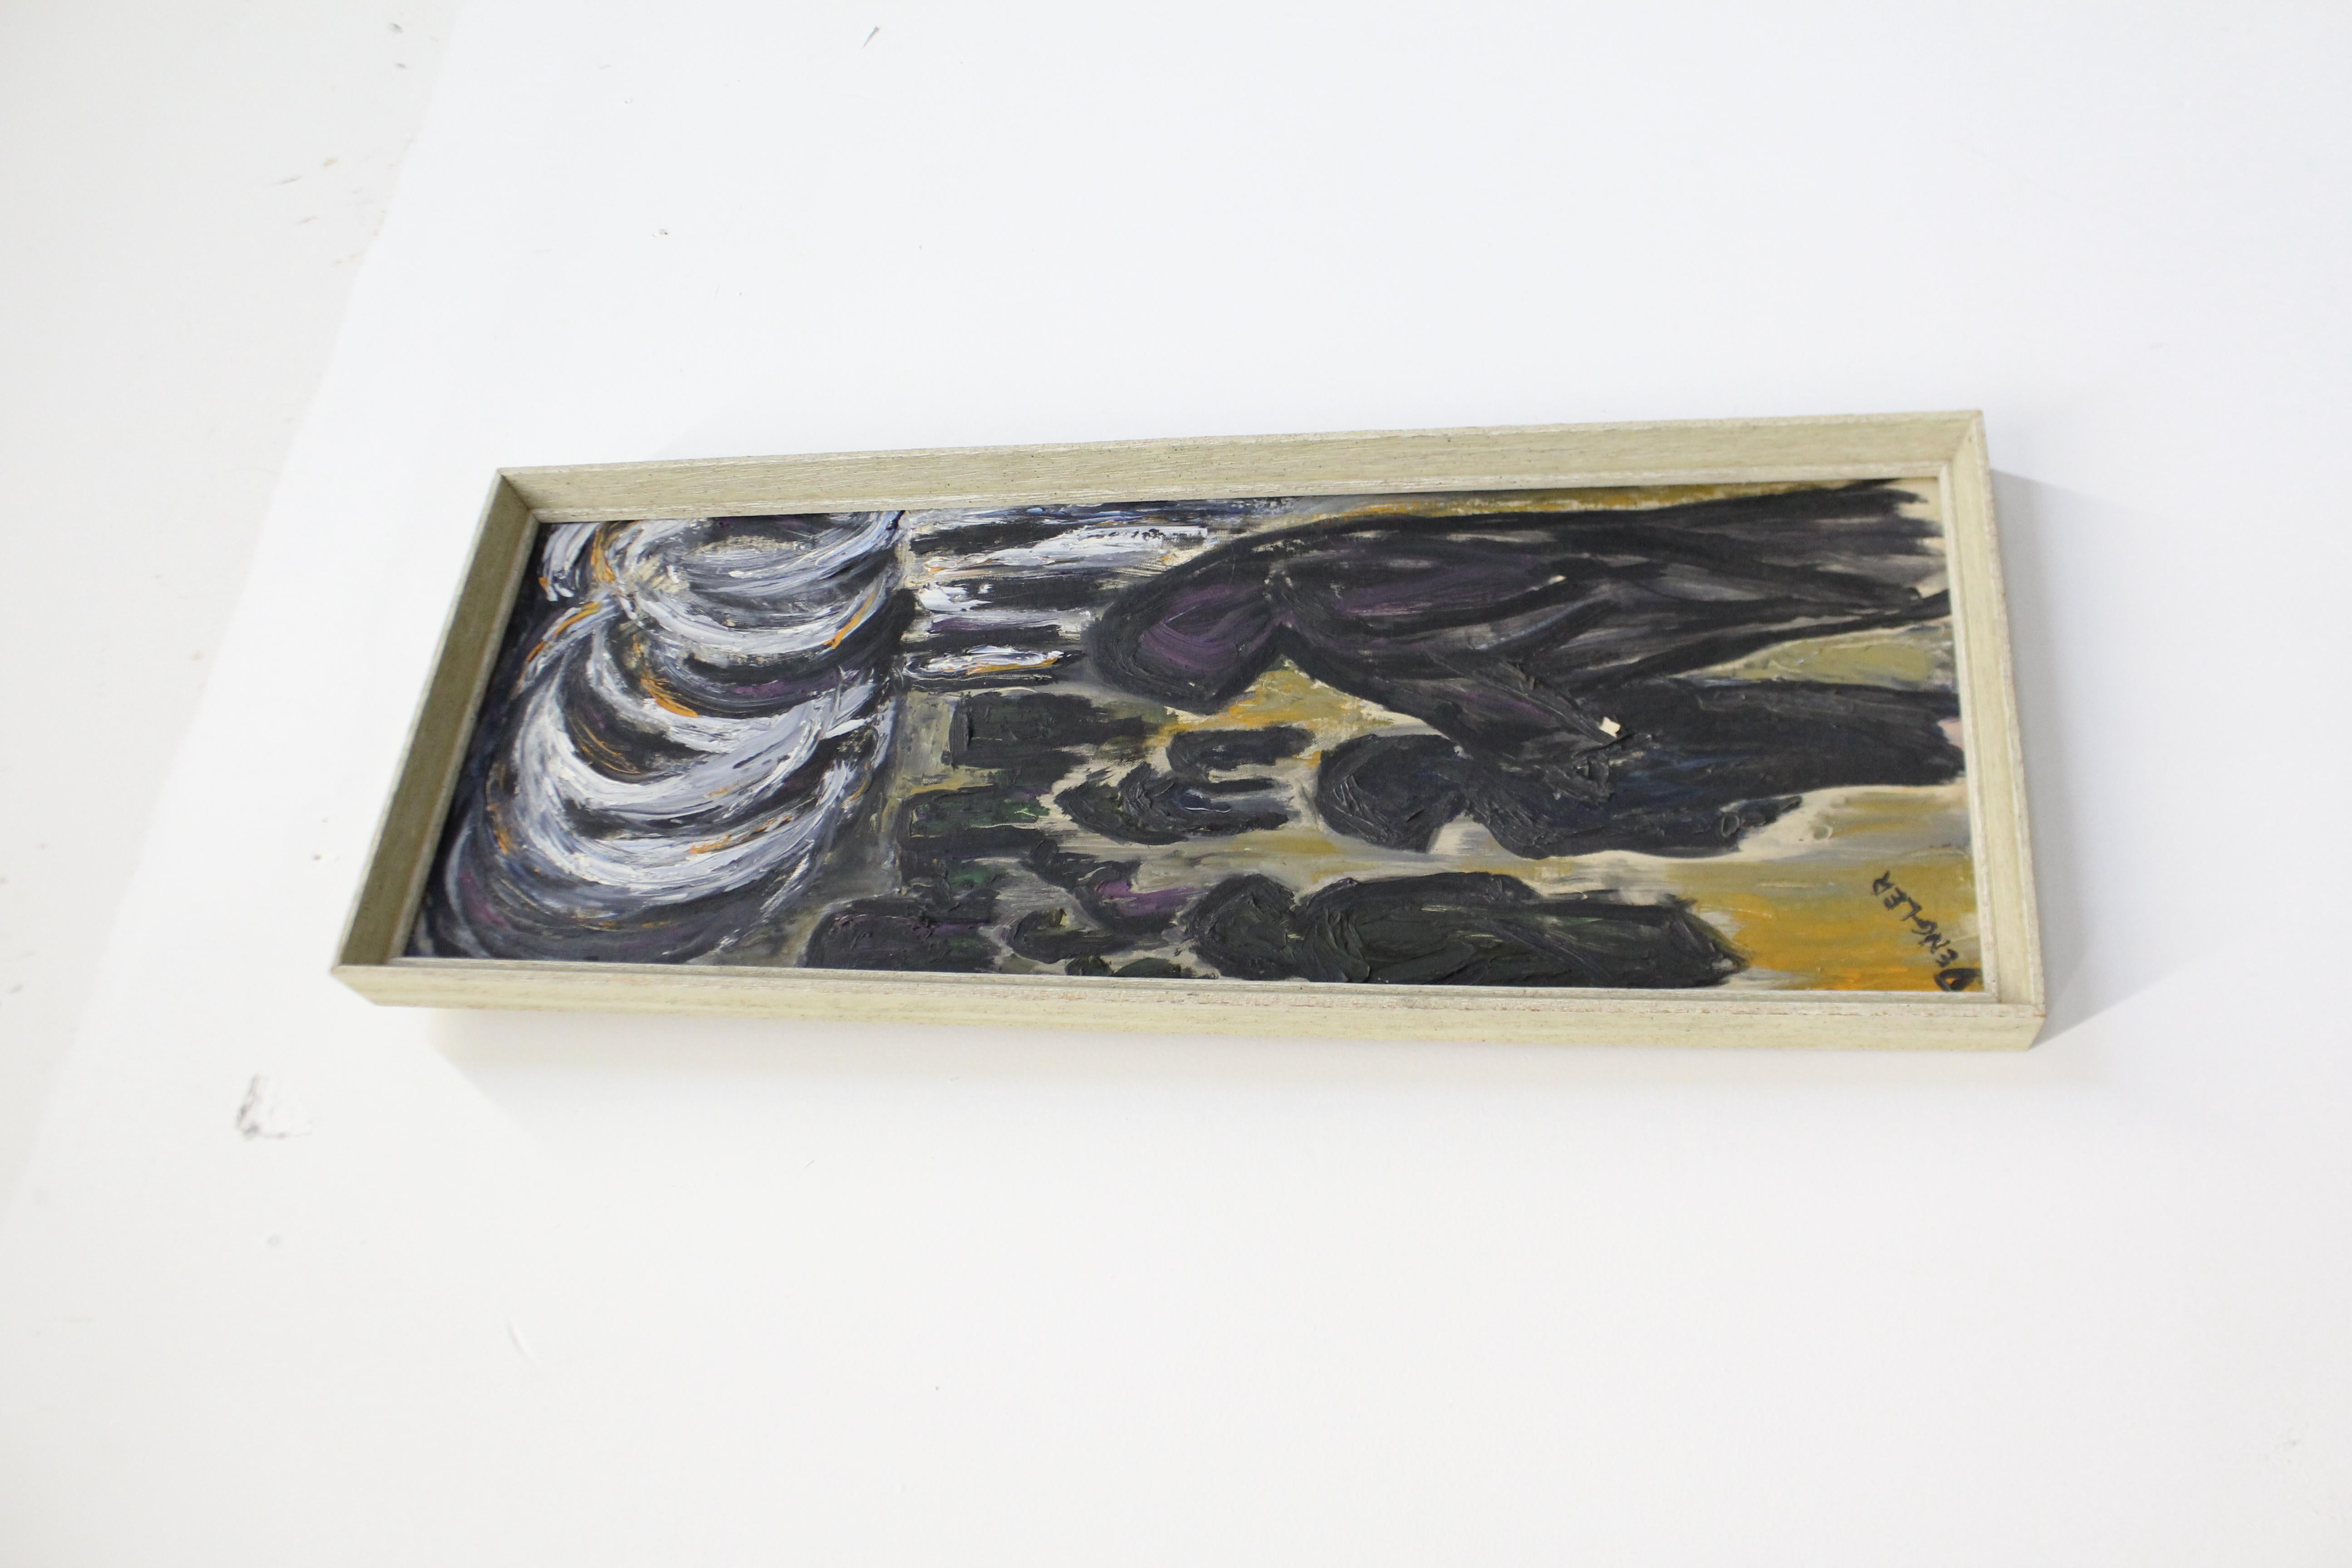 Offert est une peinture à l'huile abstraite moderne vintage, signé par Candy Dengler. Le cadre en bois présente une certaine usure due à l'âge, mais le tableau lui-même est intact et en bon état. Nous n'avons pas d'informations supplémentaires sur